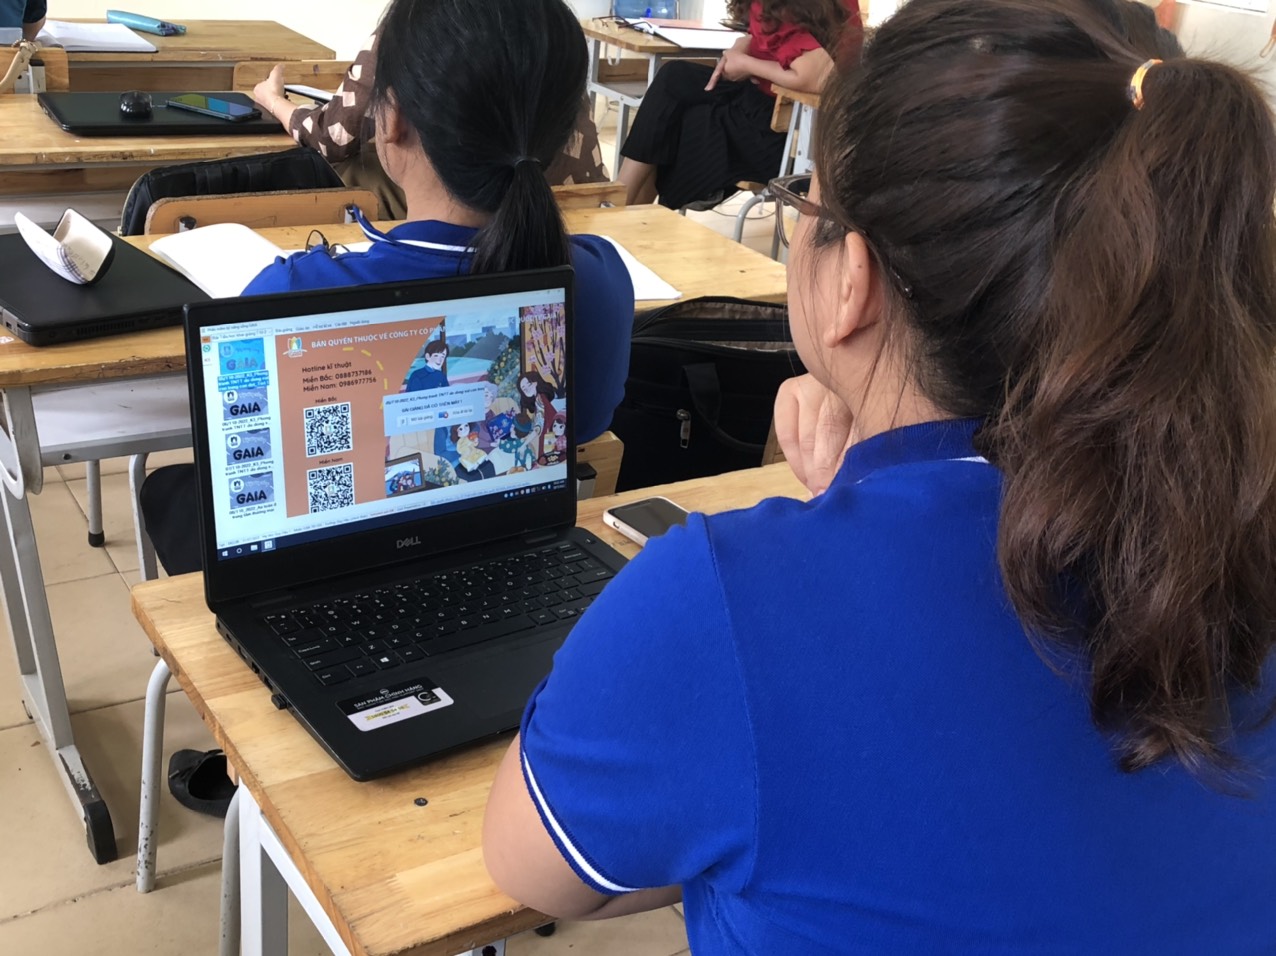 Các thầy cô tham gia một tiết học của phần mềm kỹ năng sống Gaia khối 6 , bài học "Văn hóa ứng xử nơi học đường"